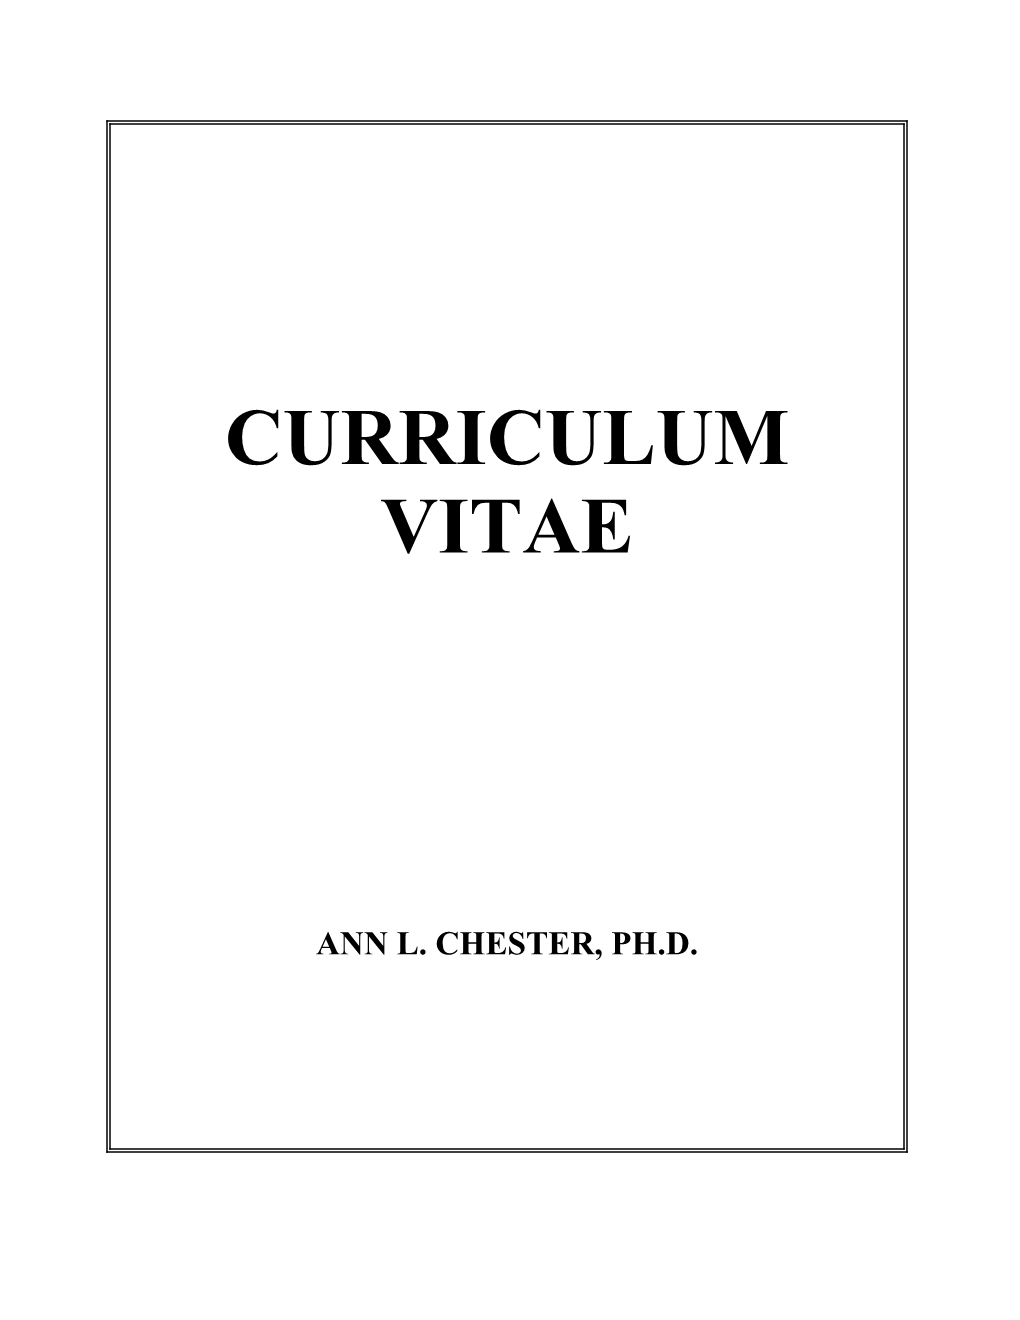 Ann Lindsay Chestercurriculum Vitae%